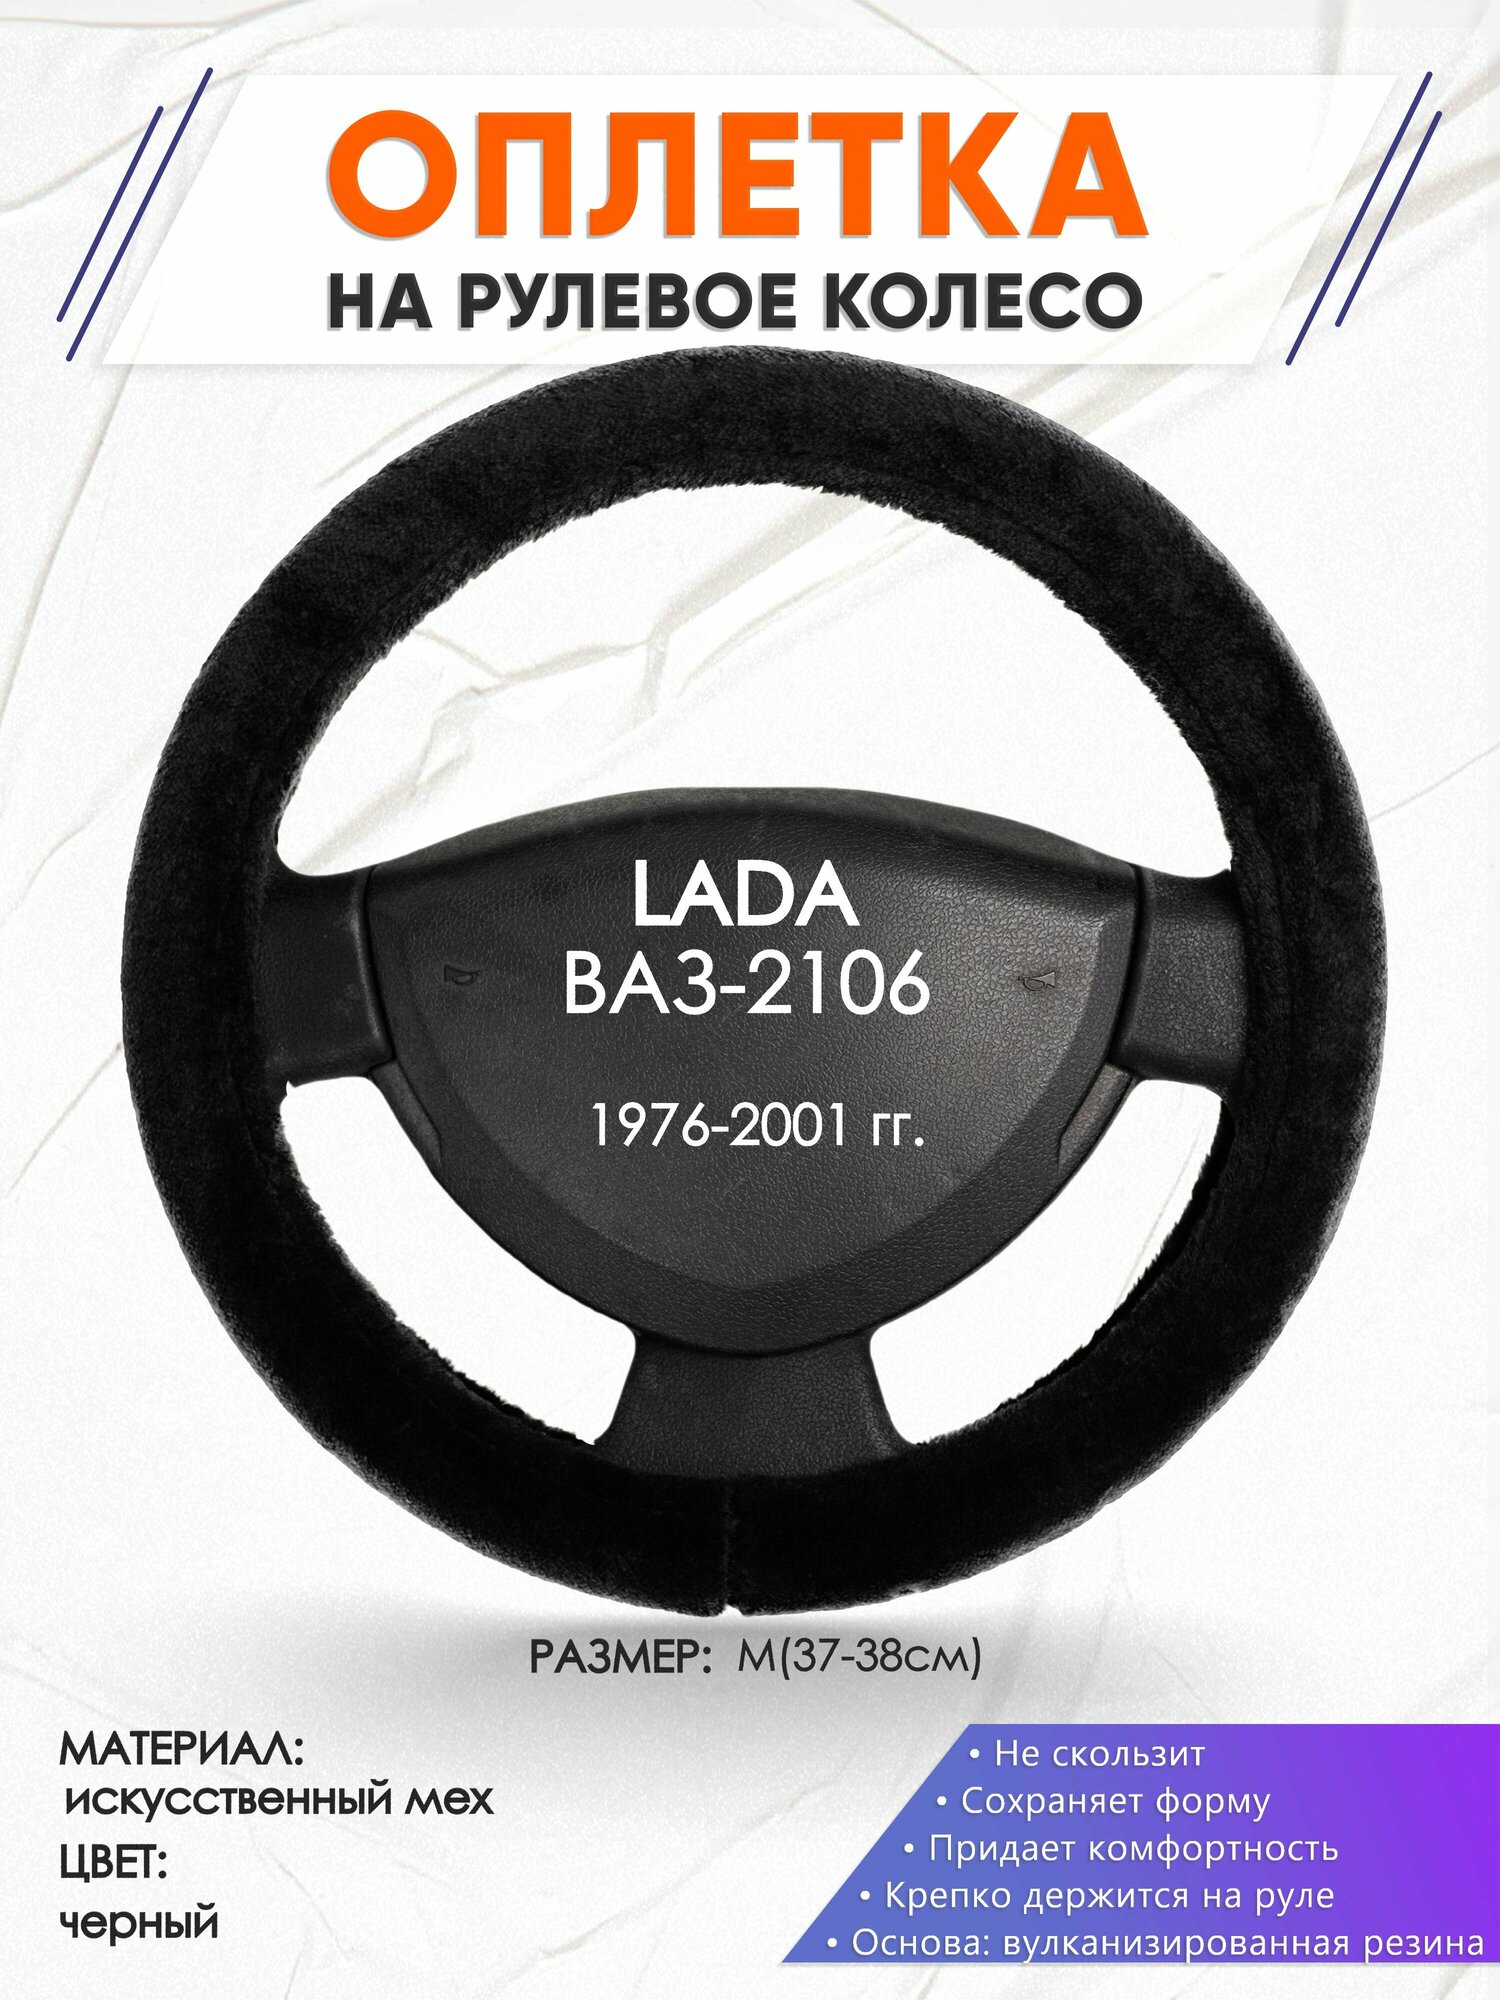 Оплетка наруль для LADA ВАЗ-2106(Лада ВАЗ-2106) 1976-2001 годов выпуска, размер M(37-38см), Искусственный мех 45